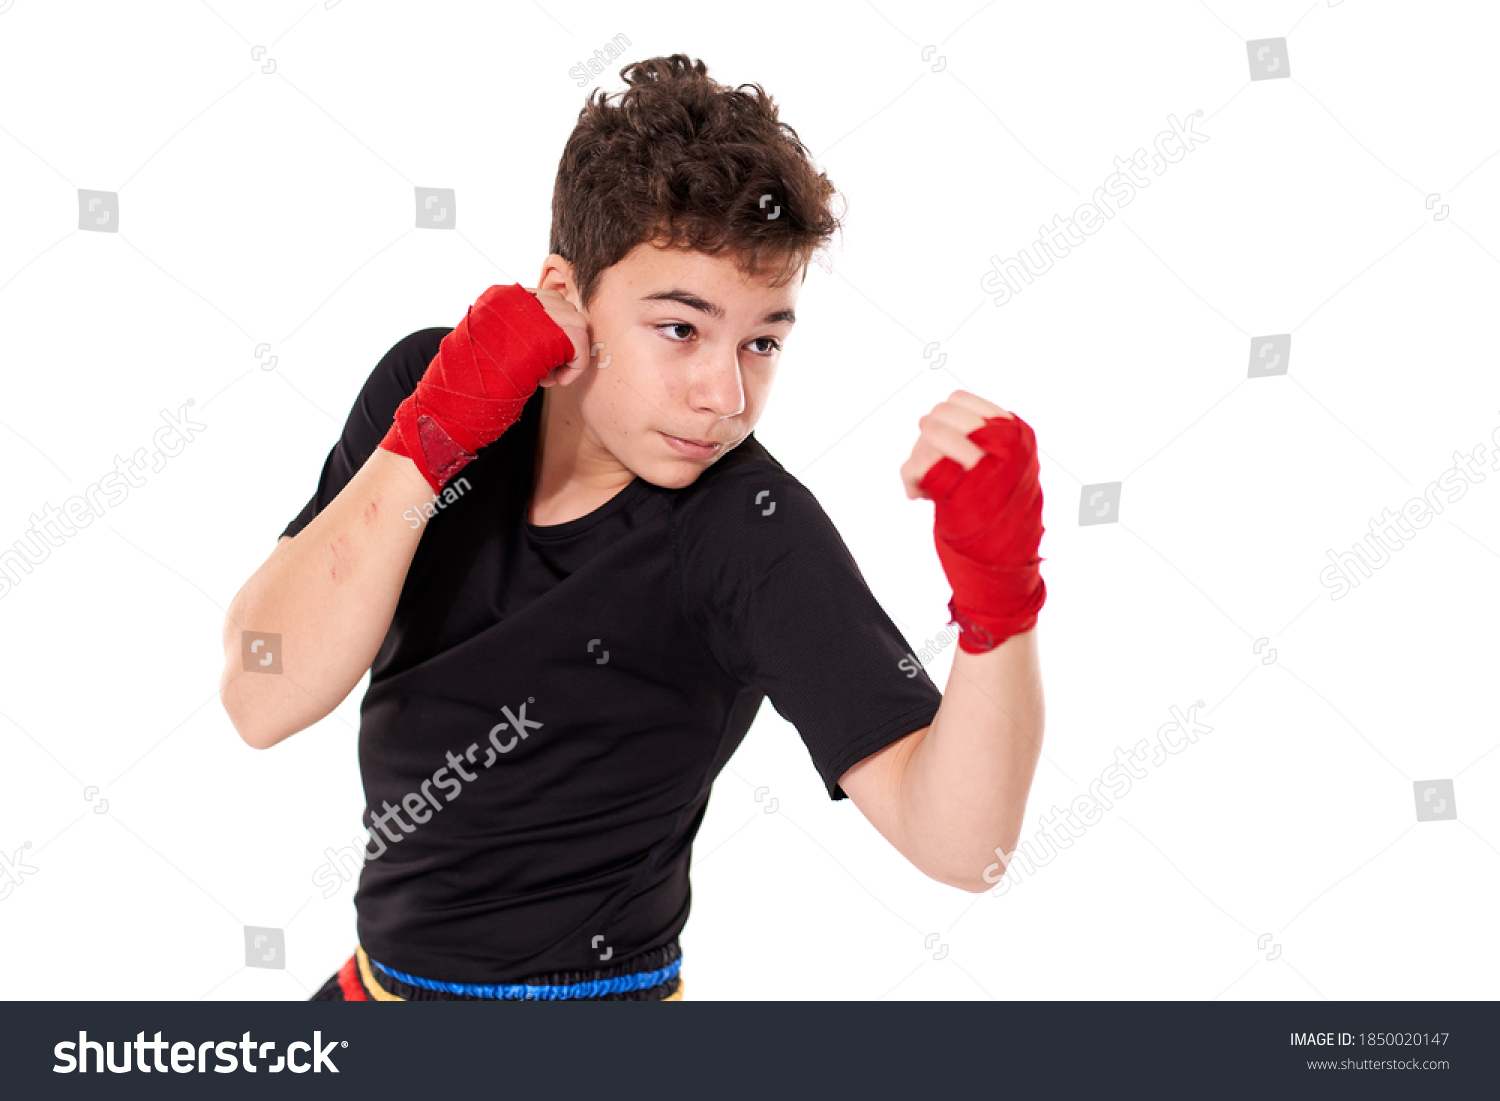 2,547 Teenagers kickboxing Images, Stock Photos & Vectors | Shutterstock